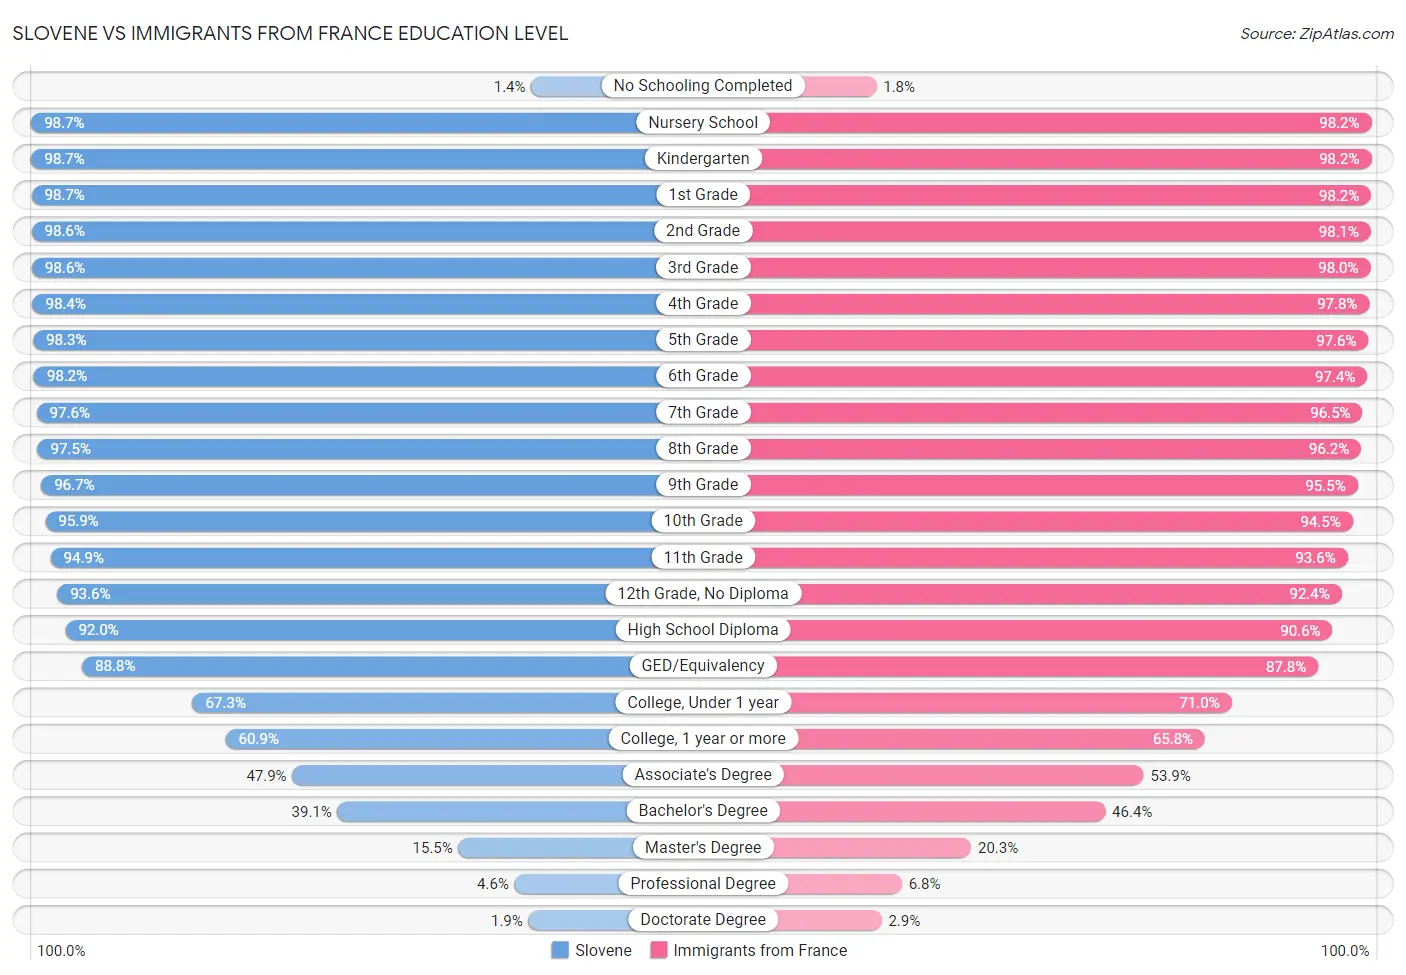 Slovene vs Immigrants from France Education Level